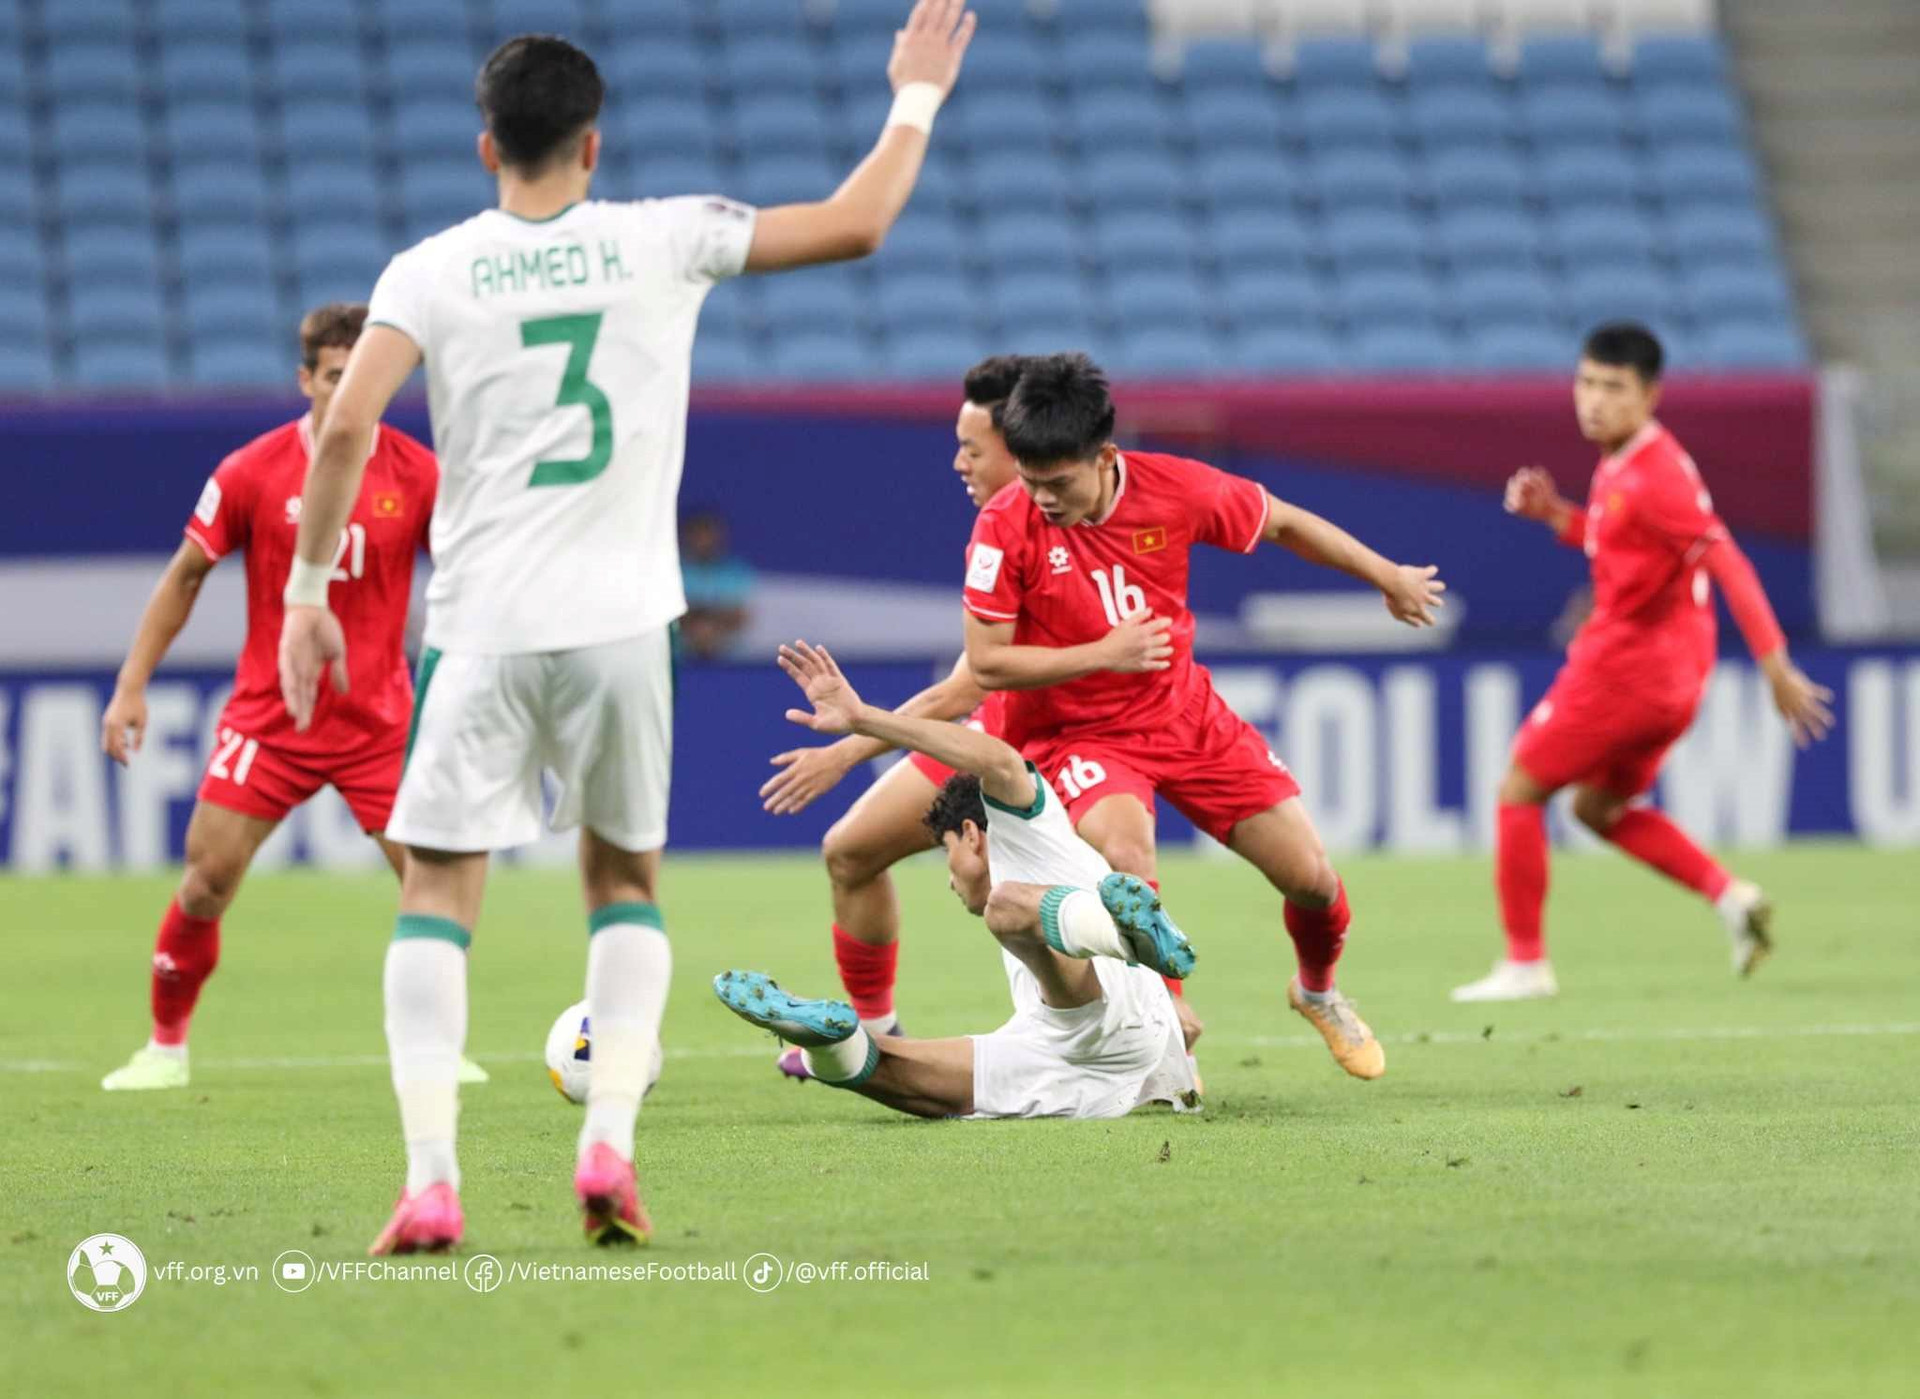 Pha tranh bóng giữa các cầu thủ U23 Việt Nam (áo đỏ) và U23 Iraq. 